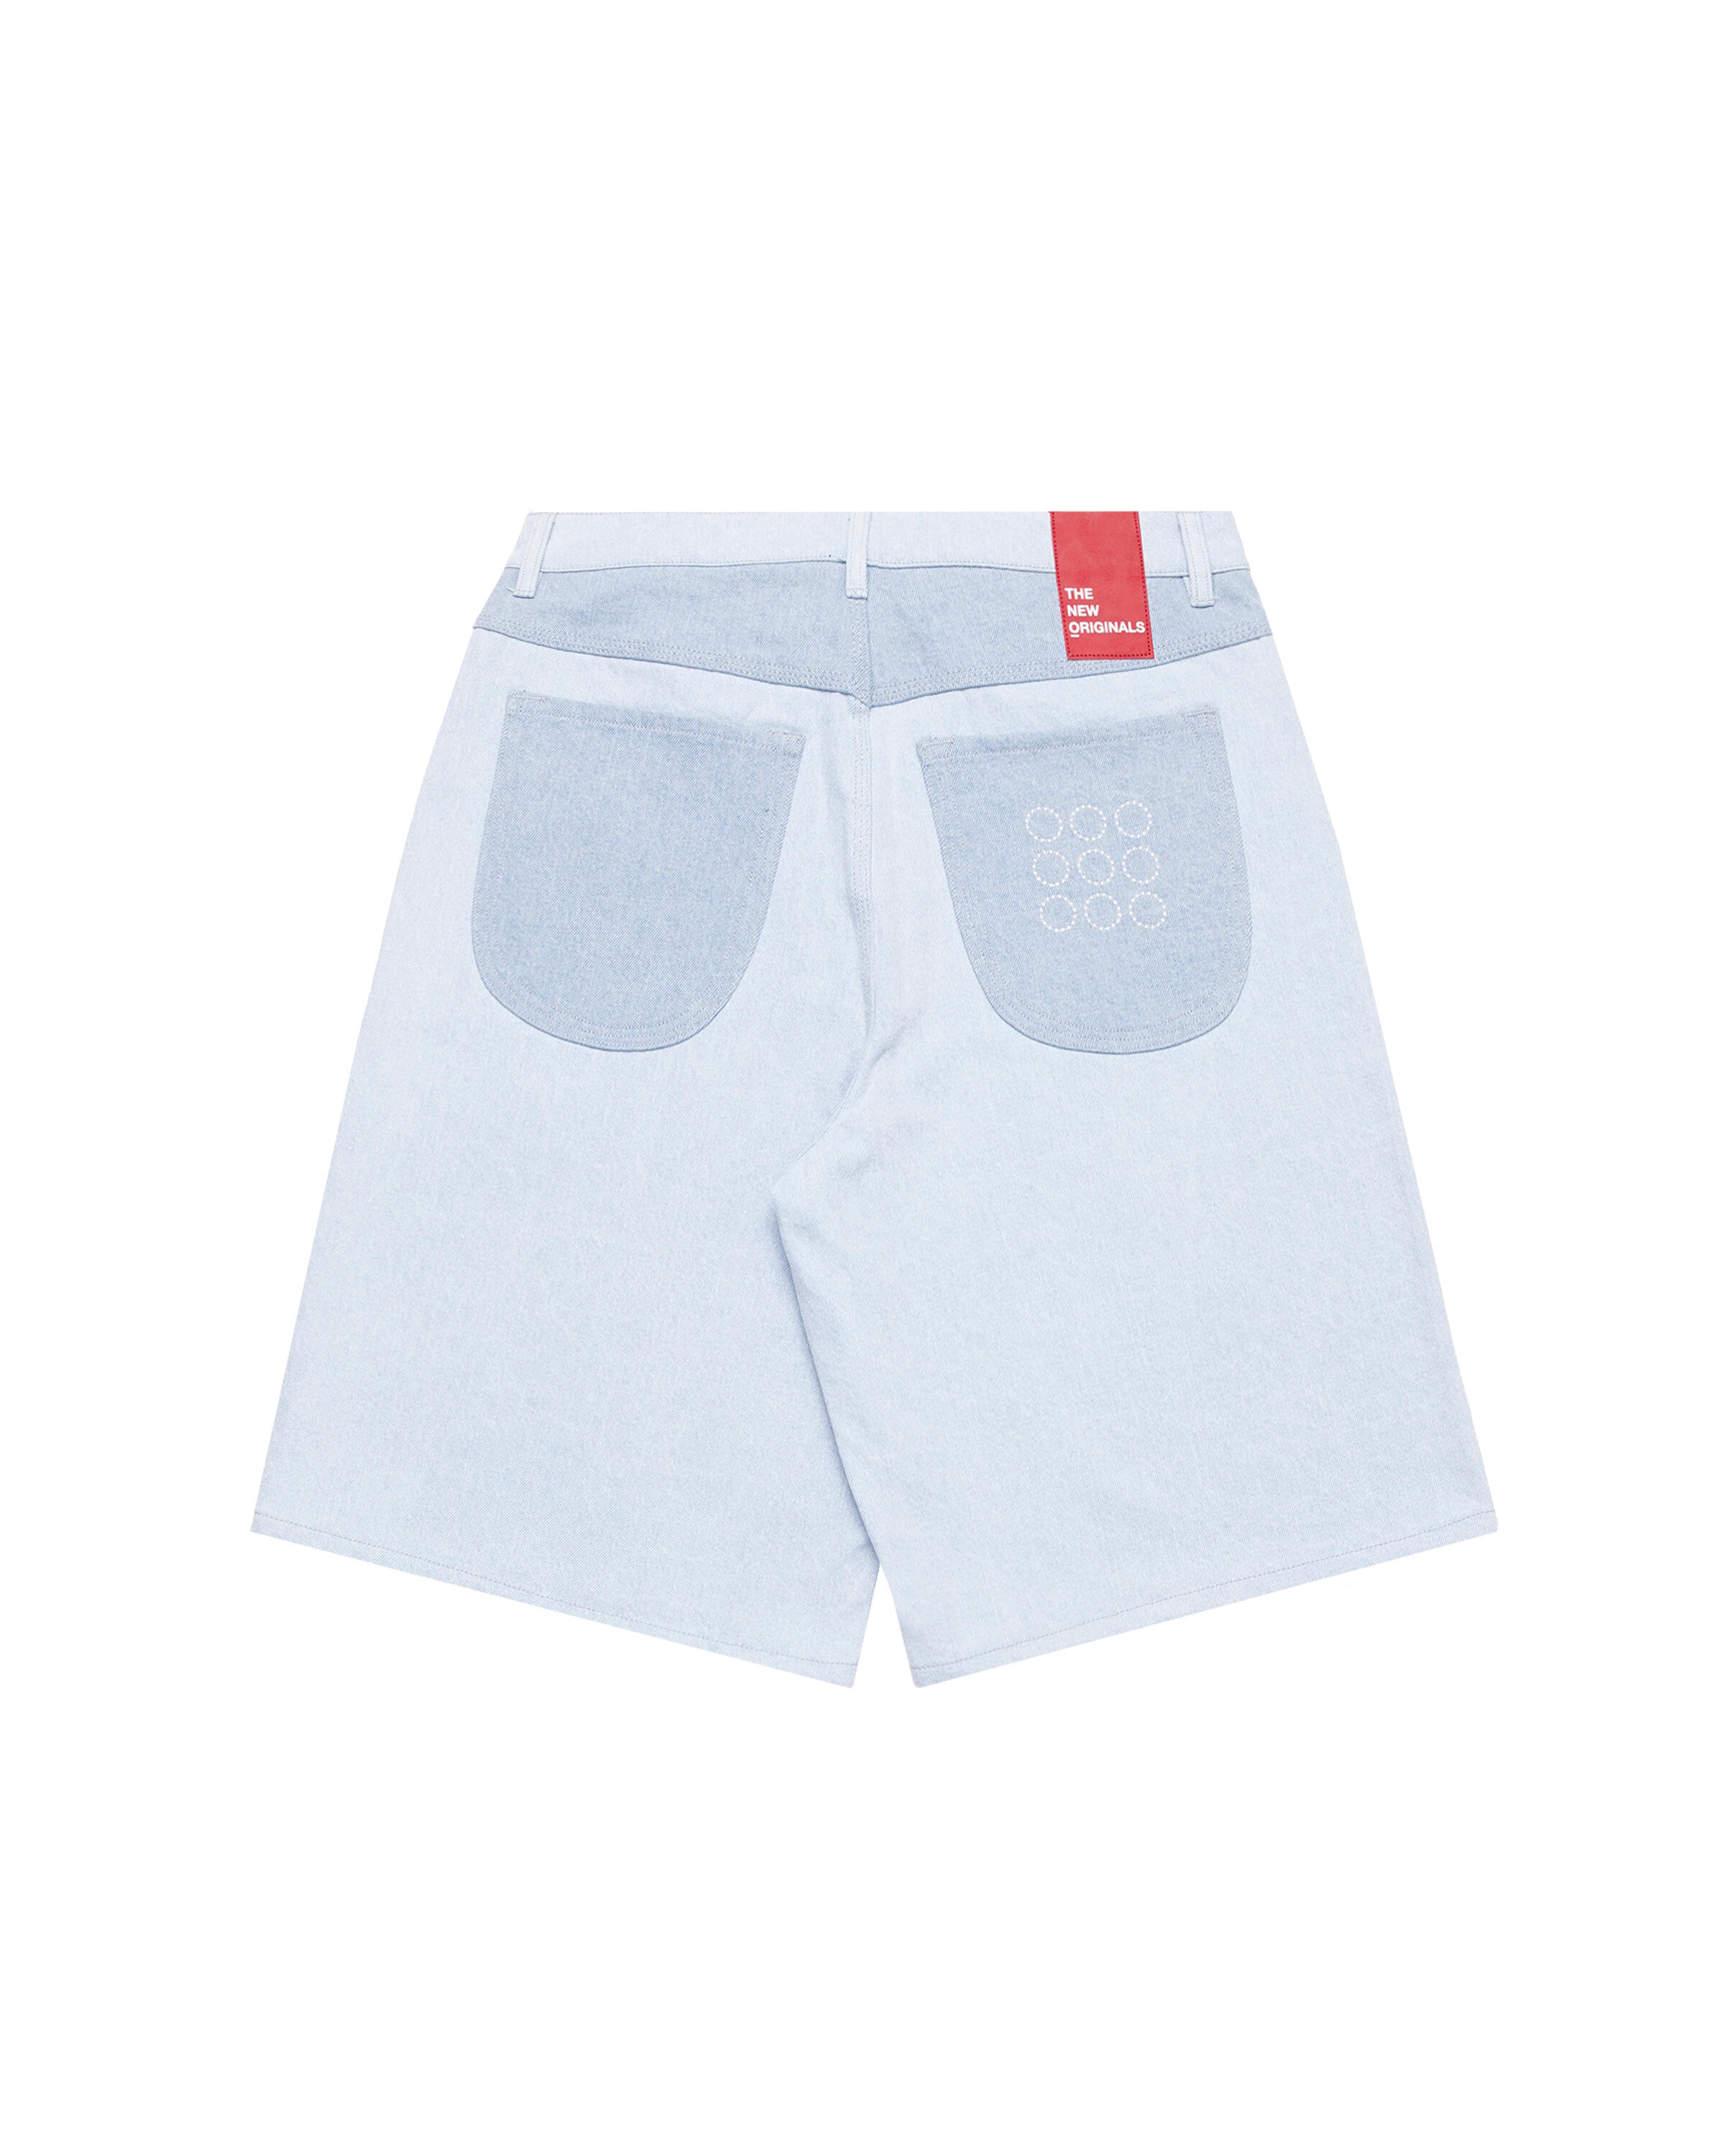 The New Originals 9-Dots Denim Shorts